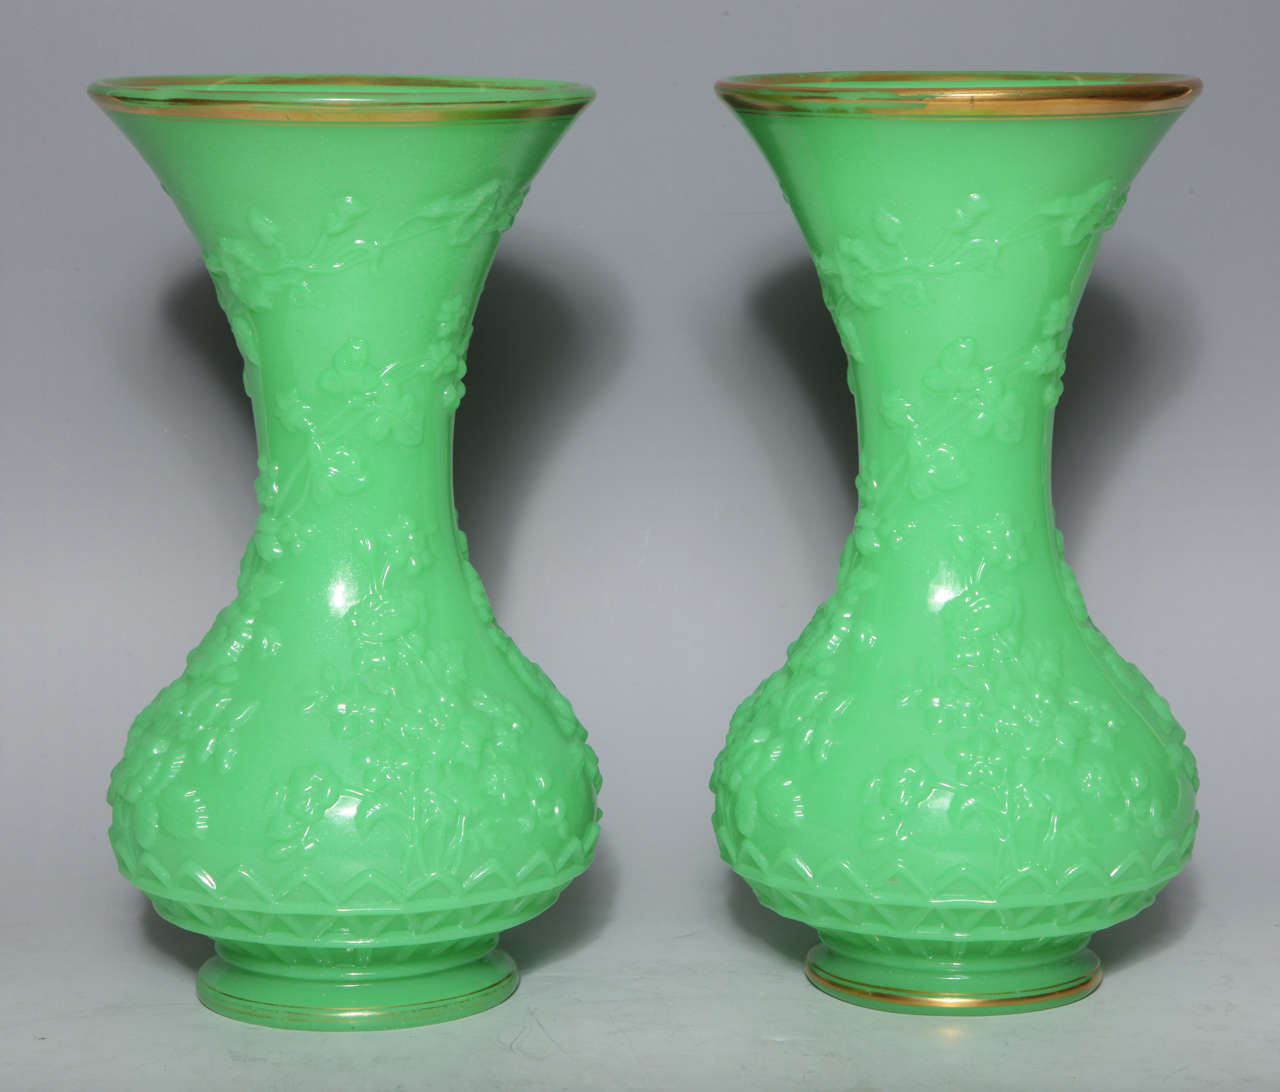 Paire de vases anciens en verre opalin vert de forme balustre, finement modelés avec des feuilles et des fleurs en repos,
attribué à 